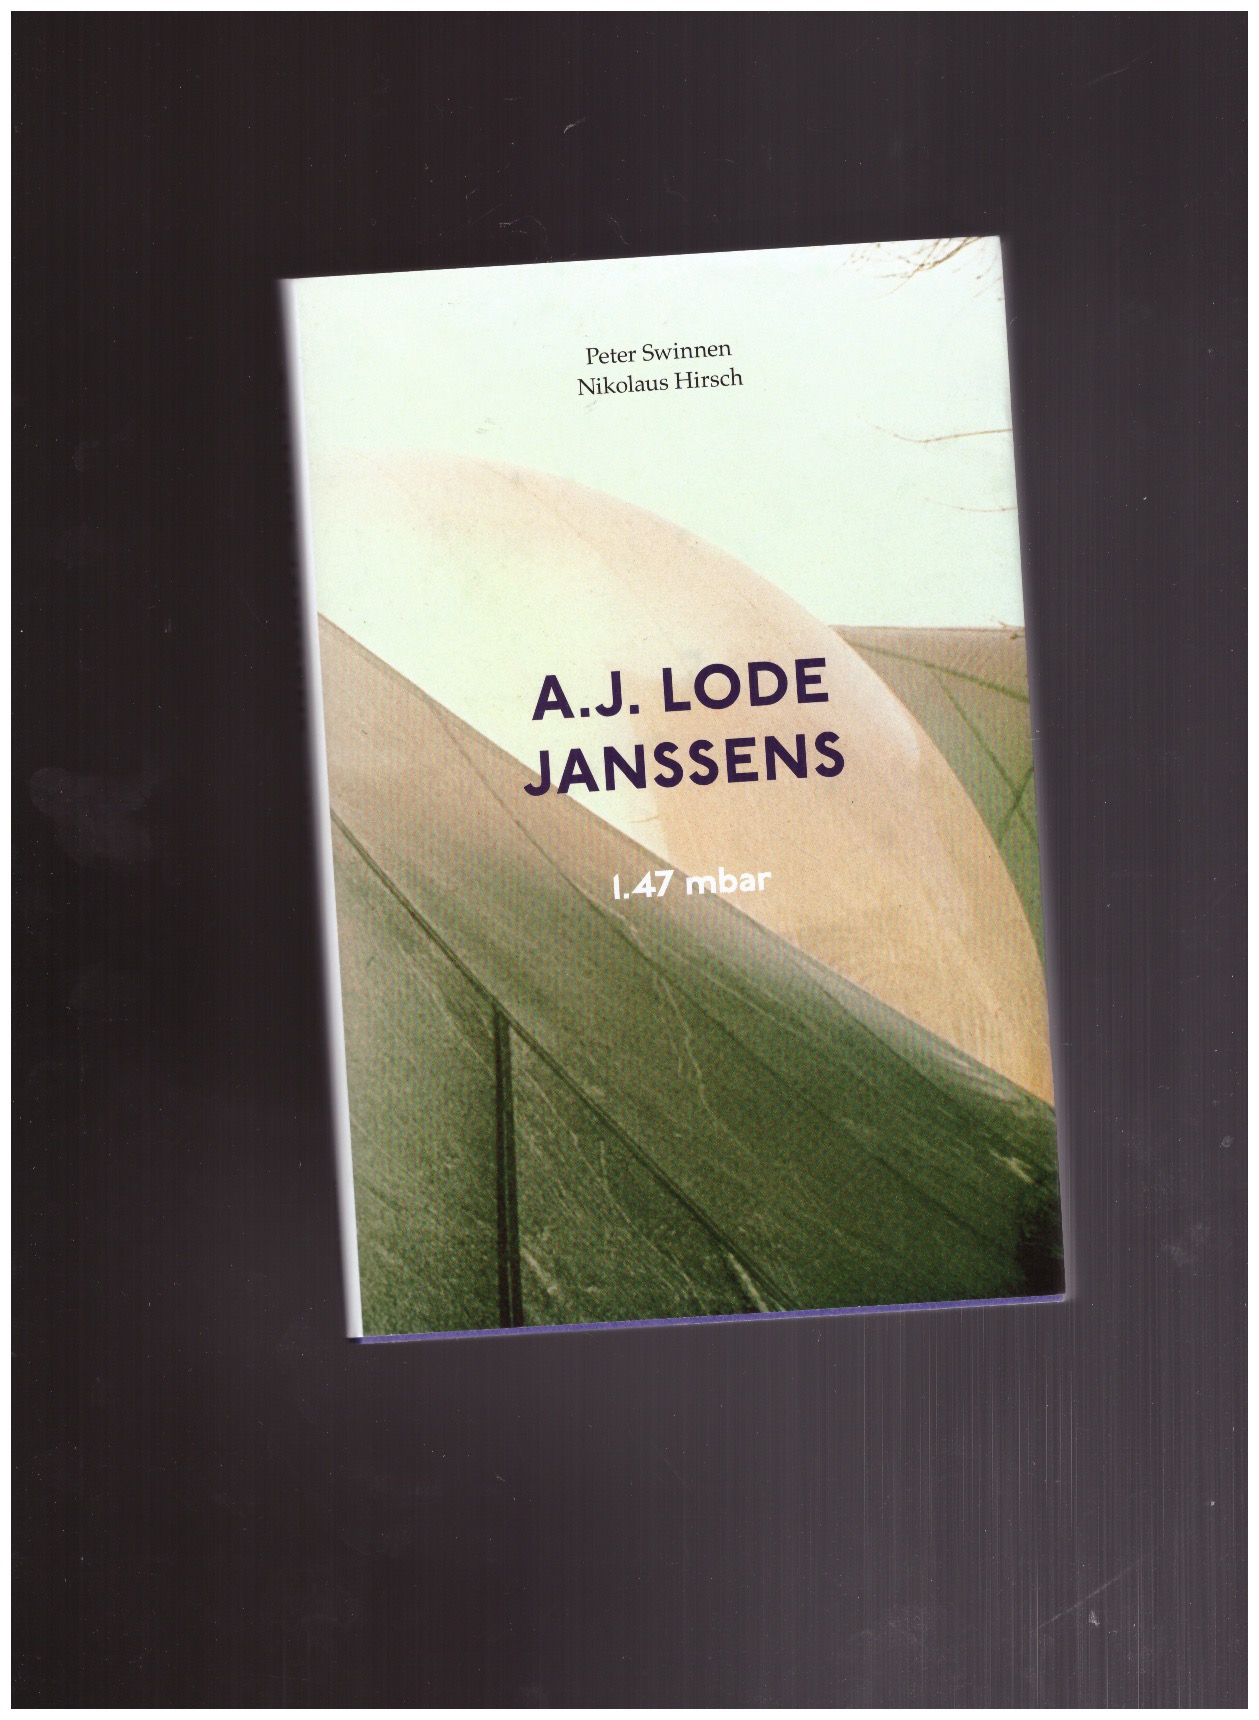 SWINNEN, Peter (ed.); HIRSCH, Nikolaus (ed.) - A.J. Lode Janssens: 1.47 mbar